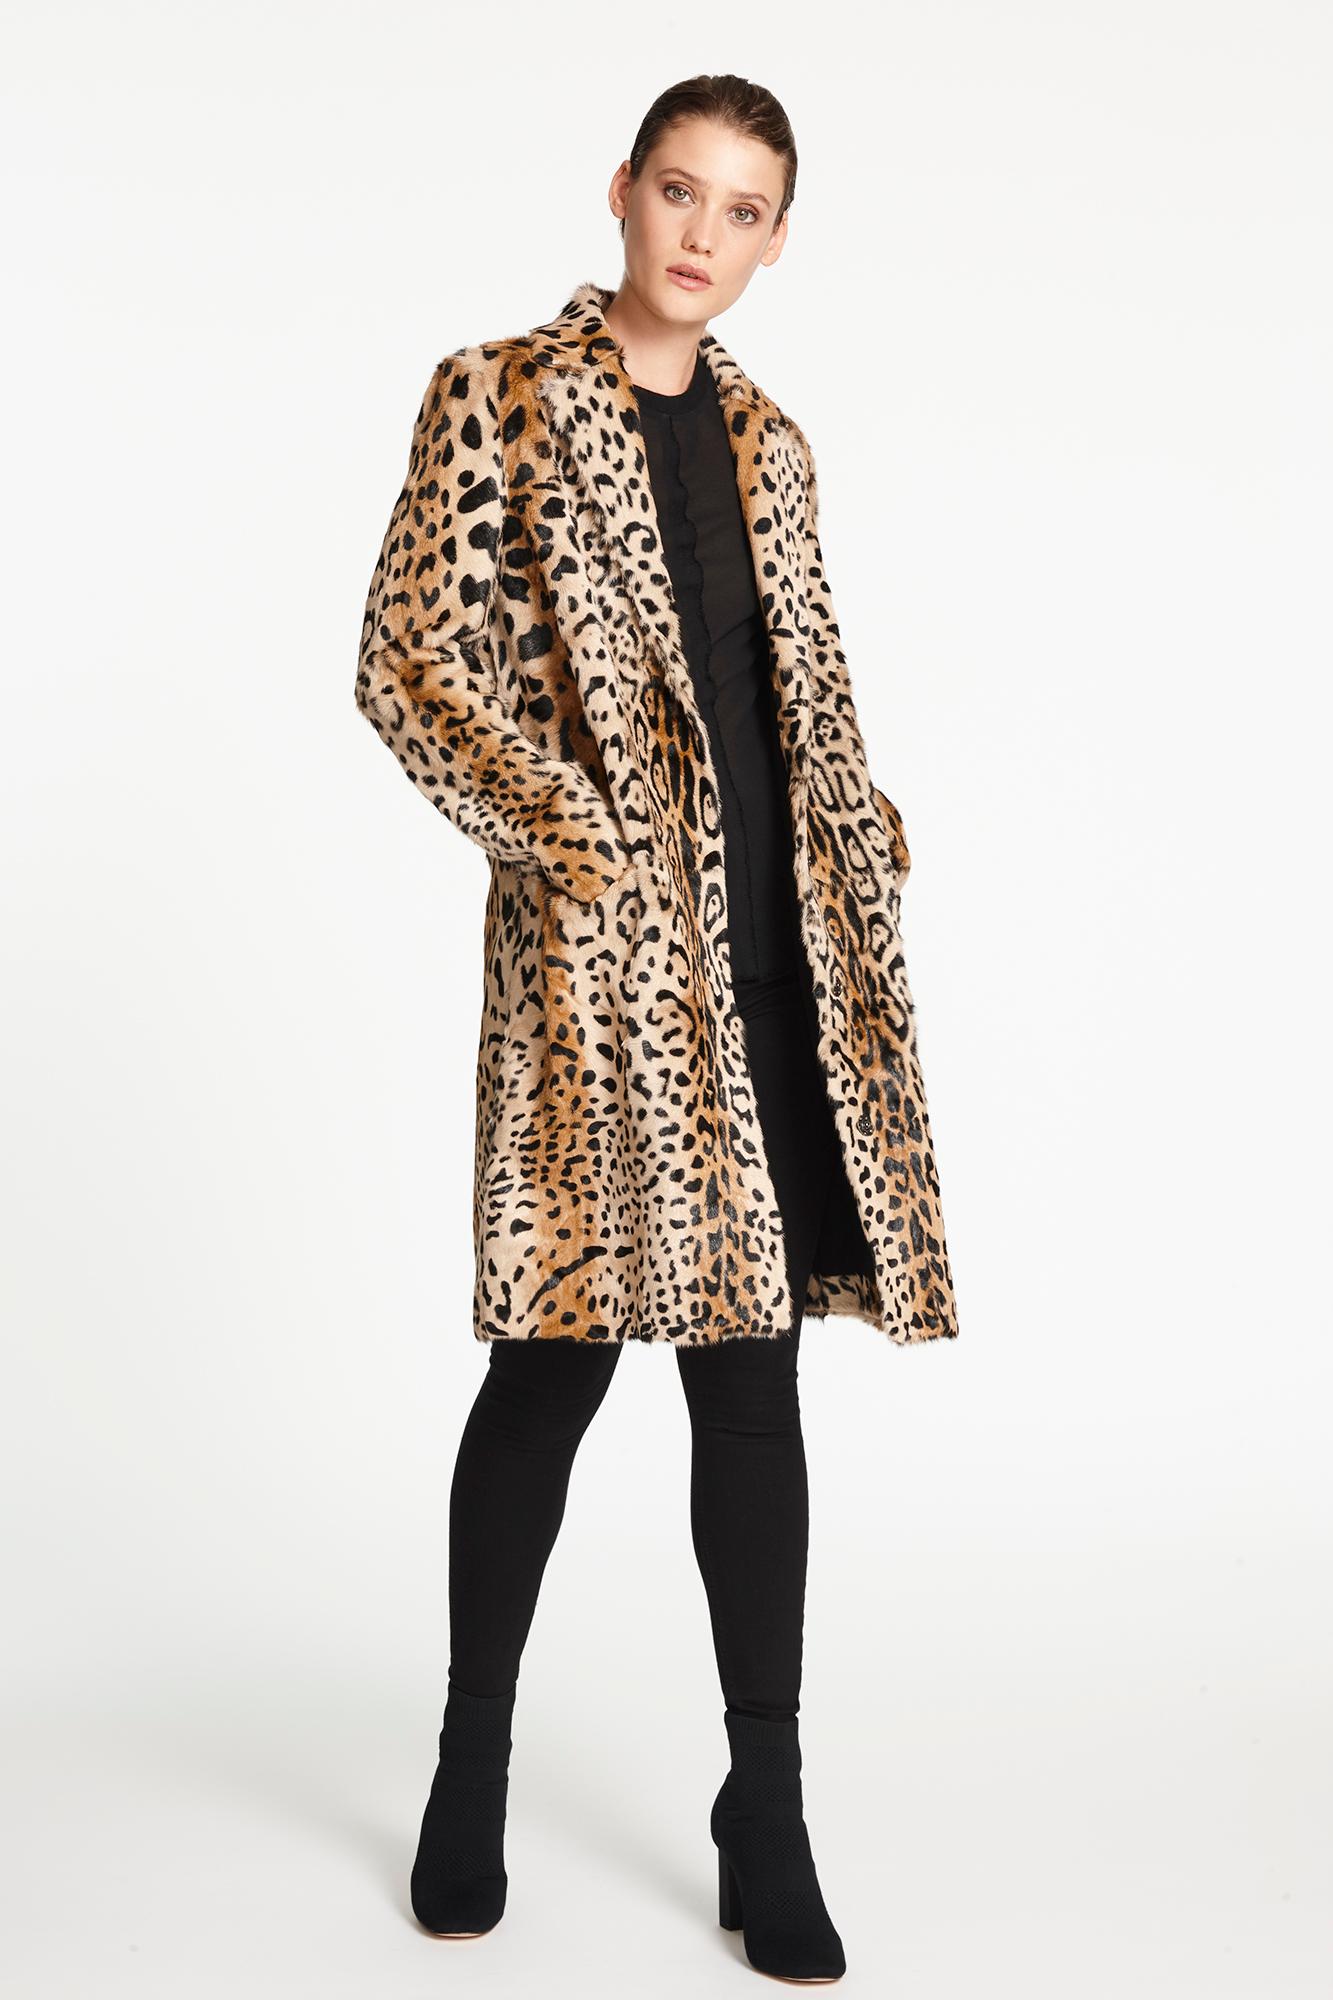 Verheyen London Leopard Print Coat in Natural Goat Hair Fur UK 12 For ...